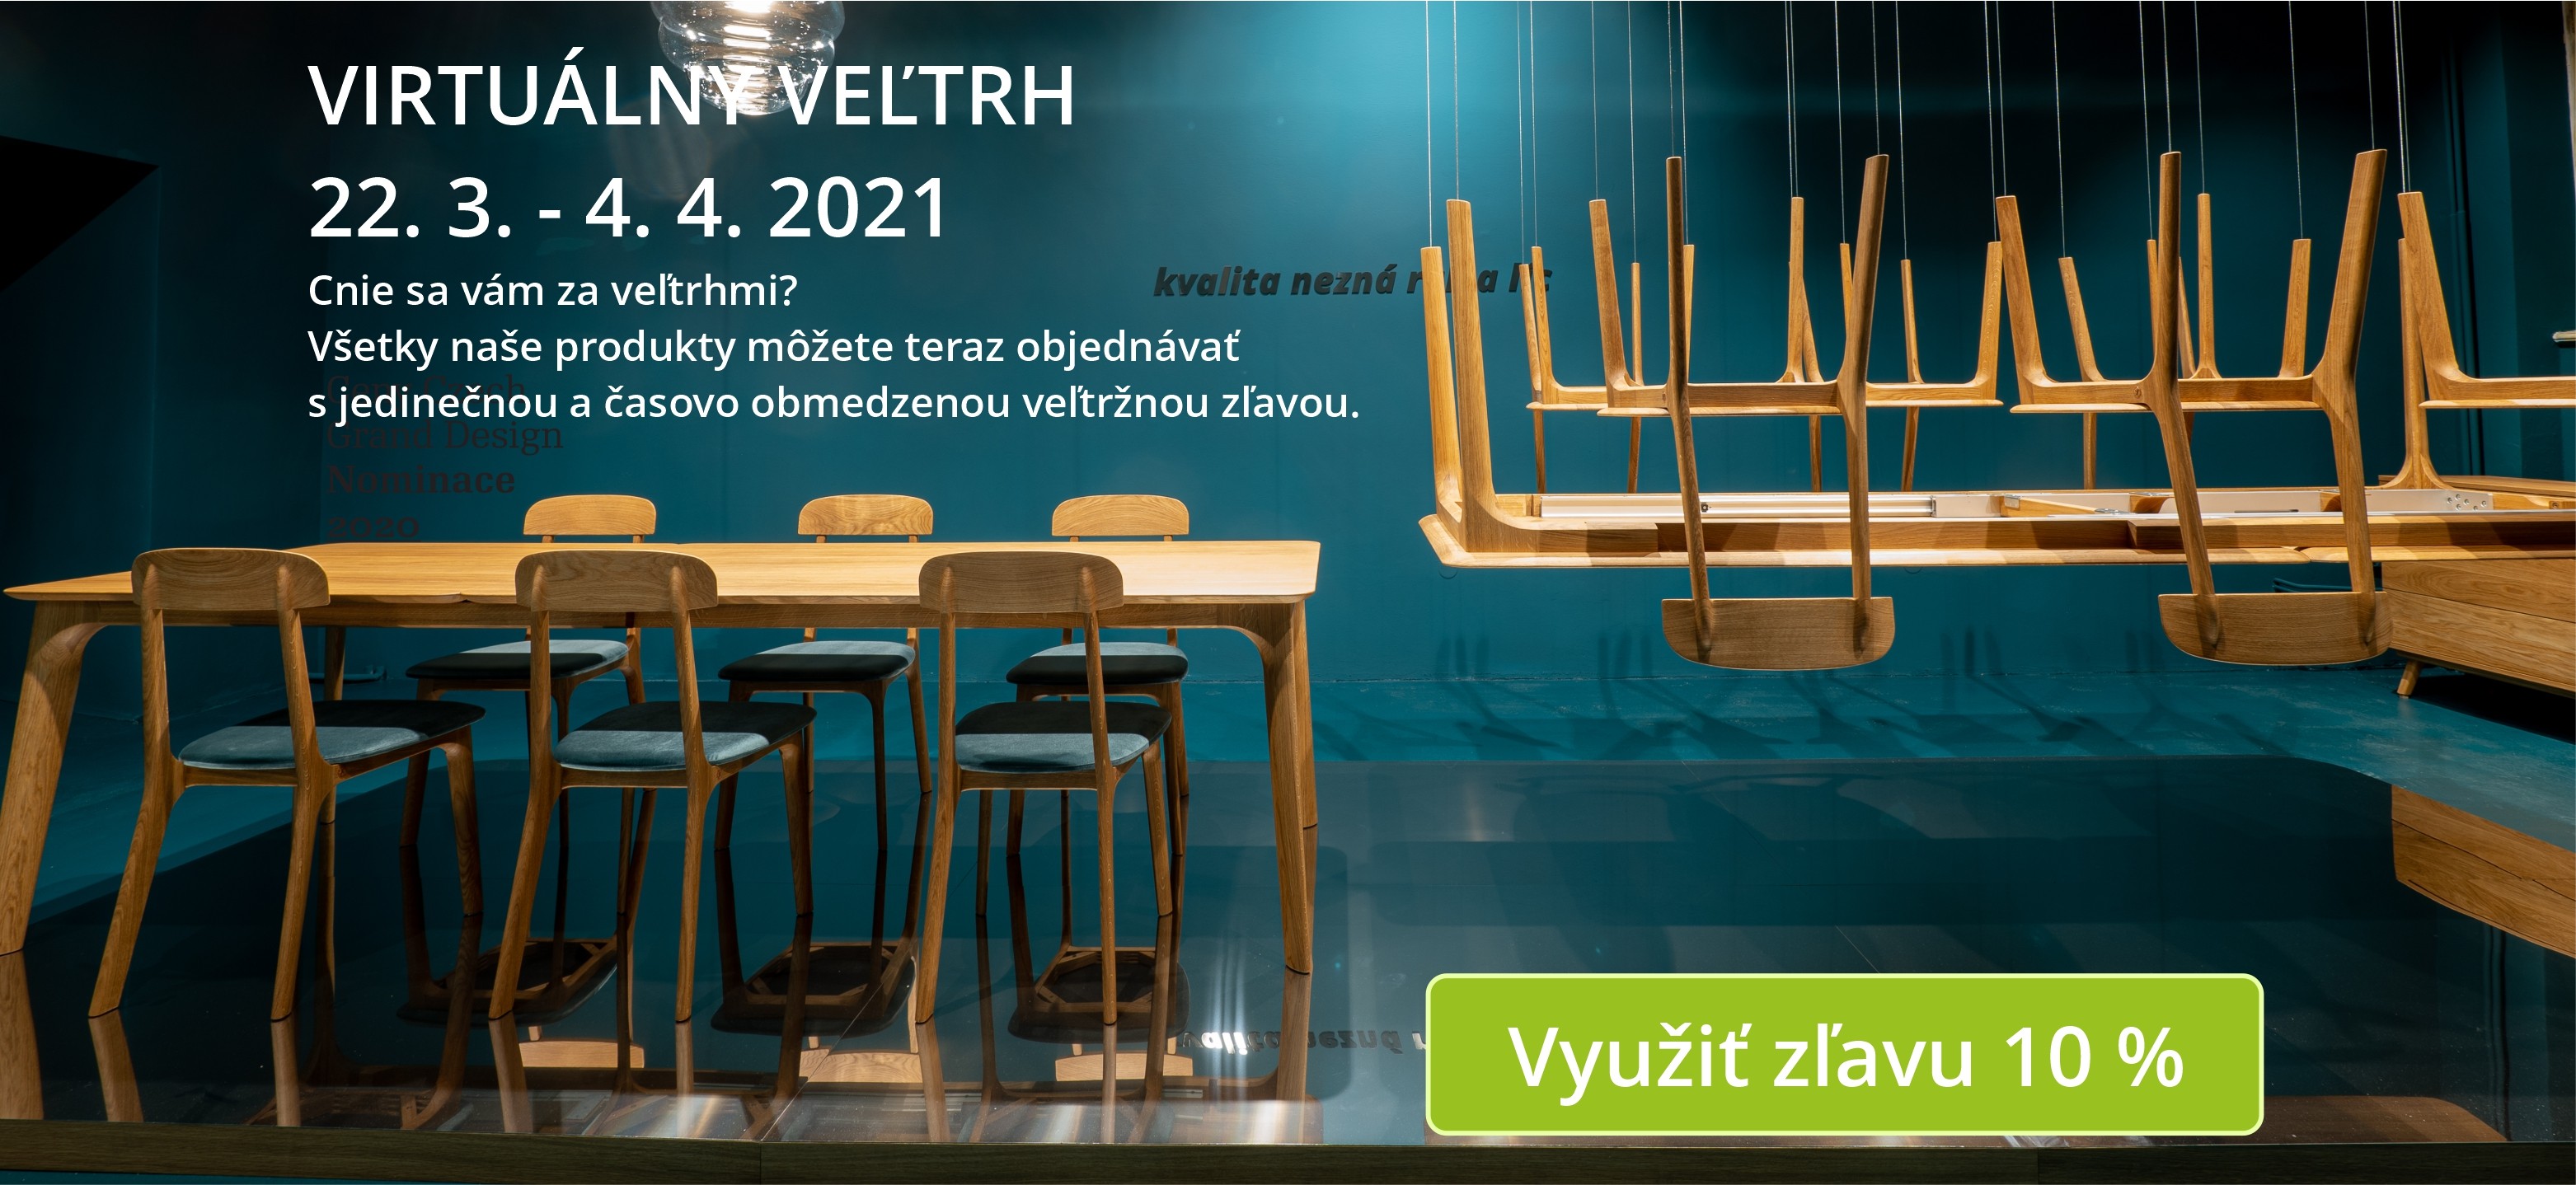 Od 22. 3. do 4. 4. 2021 sa na Slovensku koná virtuálny veľtrh nábytku.